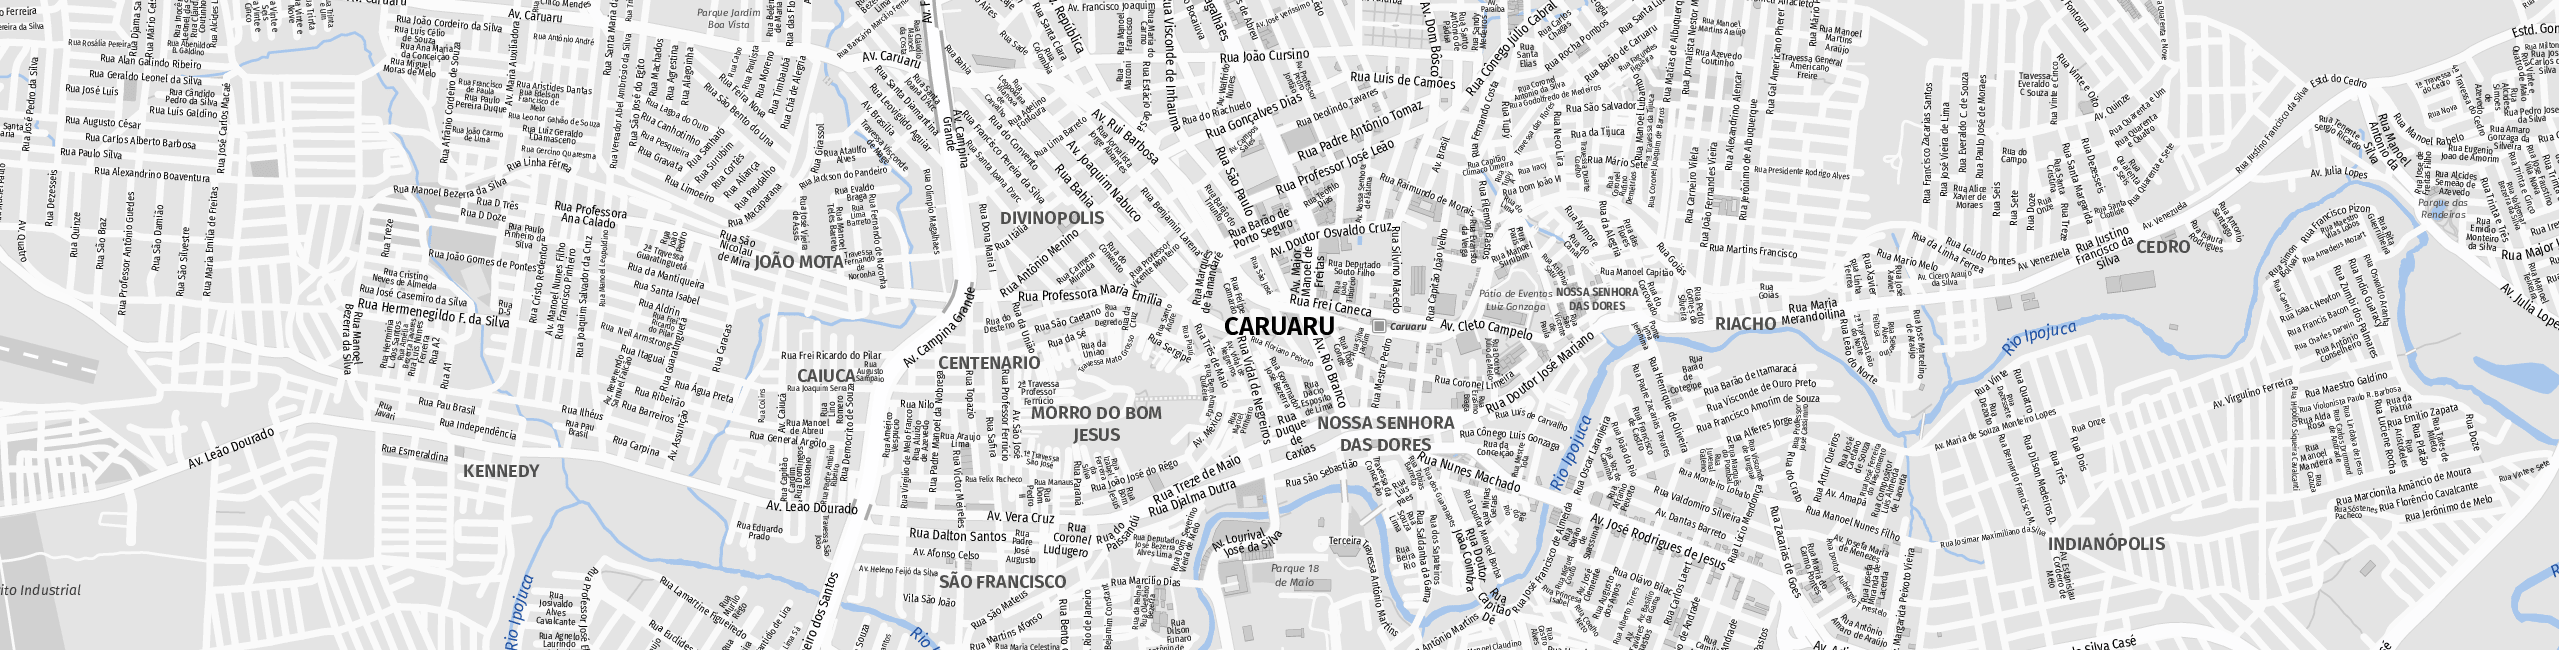 Stadtplan Caruaru zum Downloaden.